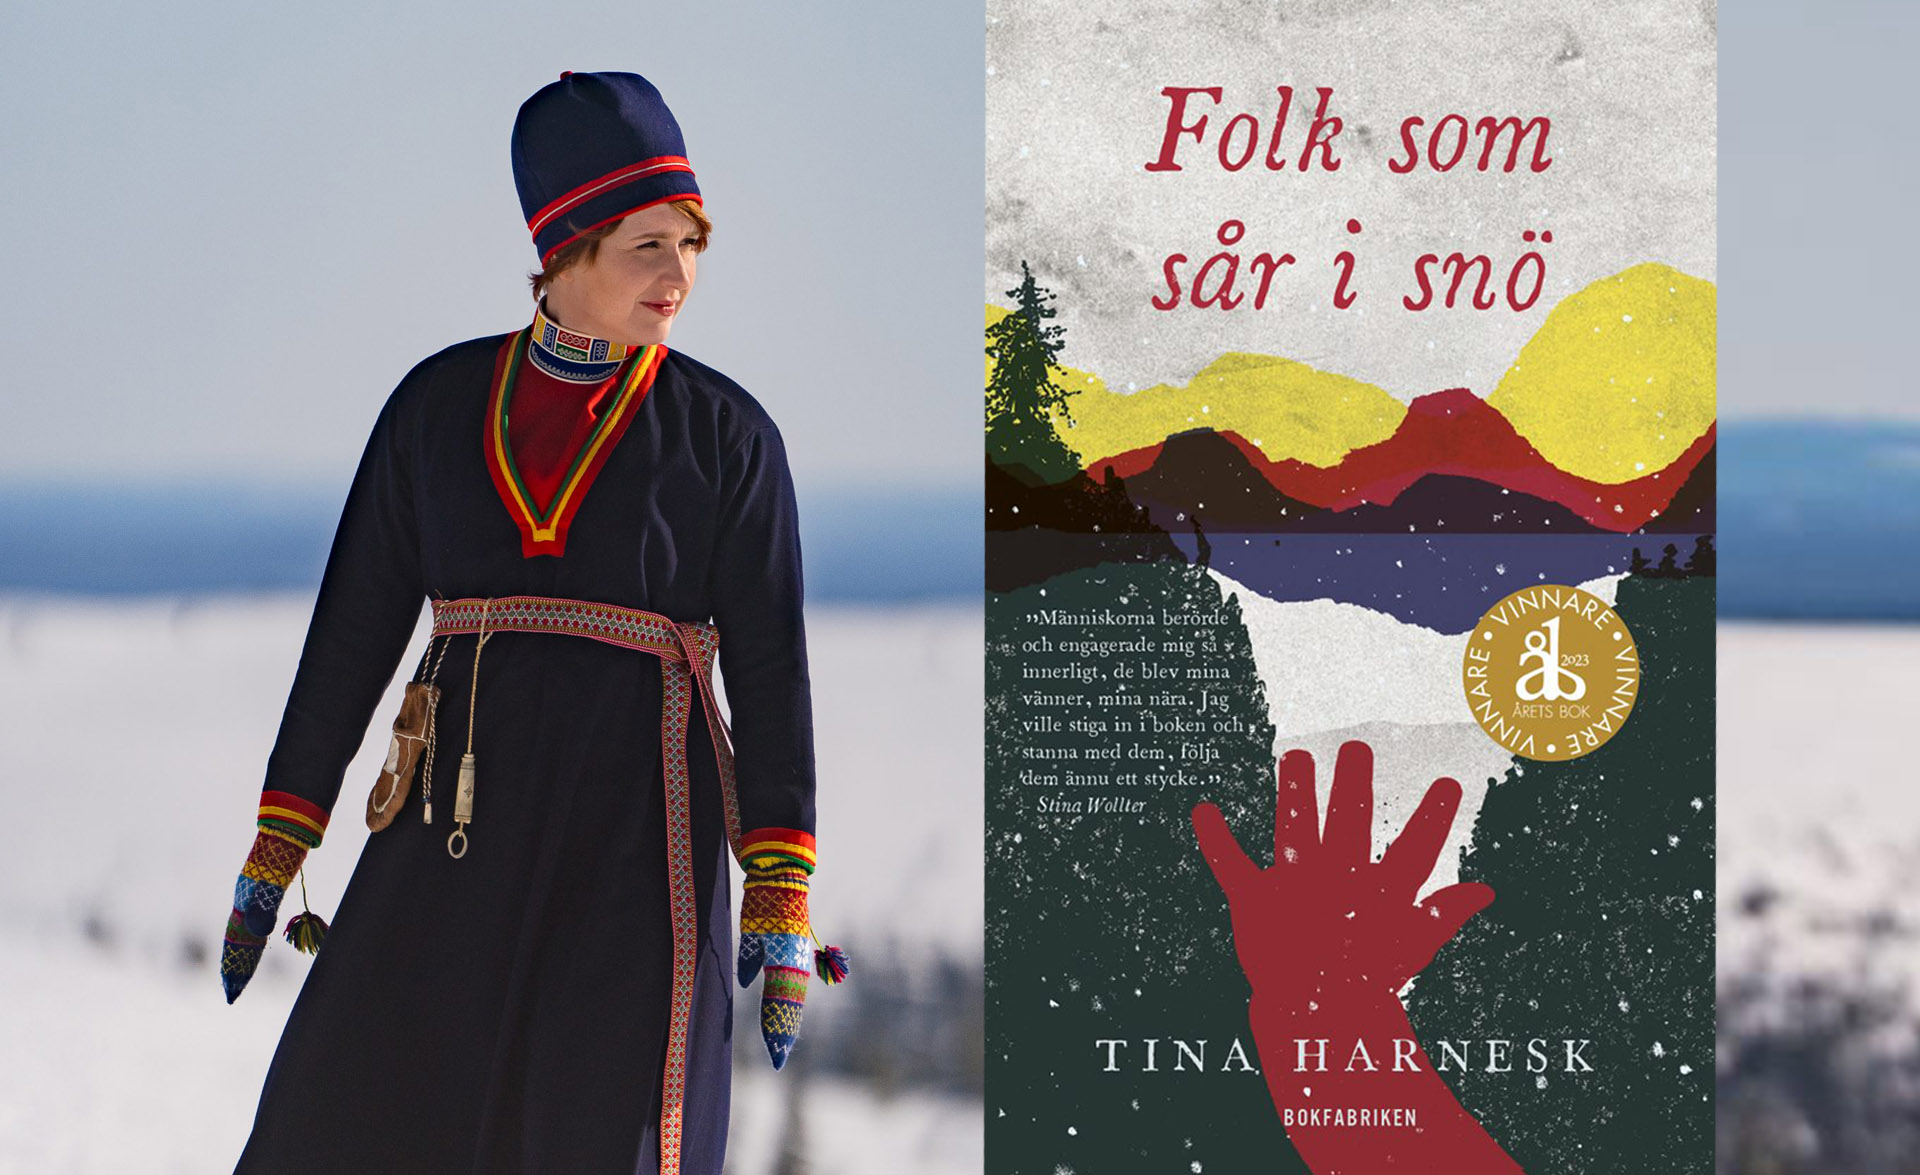 Kvinna med samisk dräkt utomhus i vinterlandskap och bokomslaget för "Folk som sår i snö".